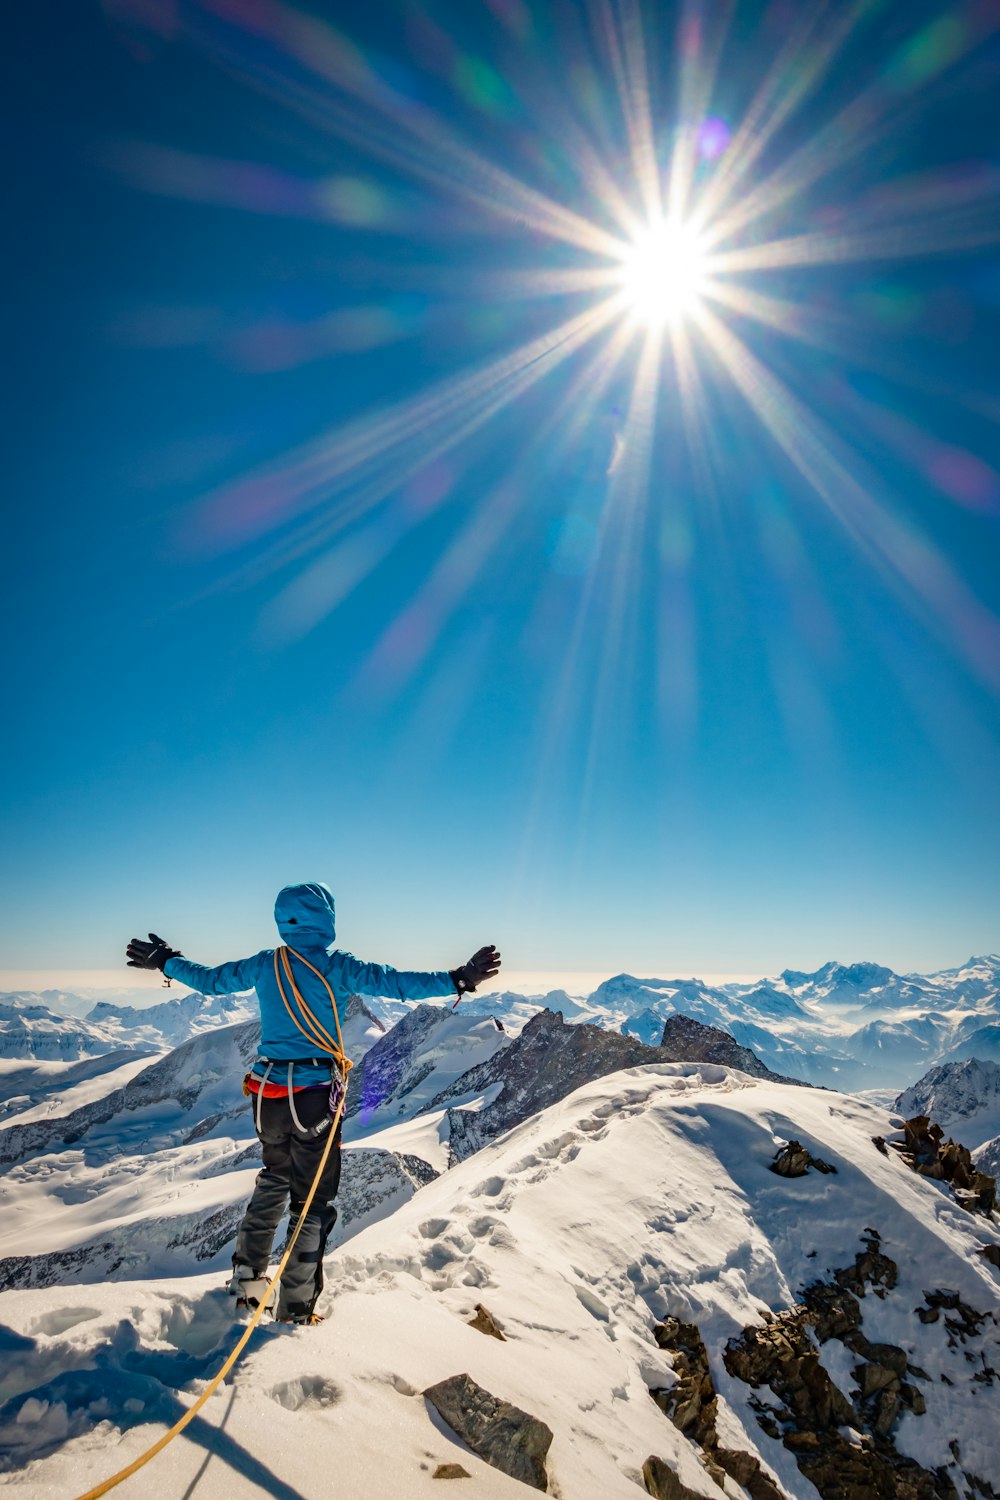 Mann in blauer Jacke und schwarzer Hose auf schneebedecktem Berg unter blauem Himmel während